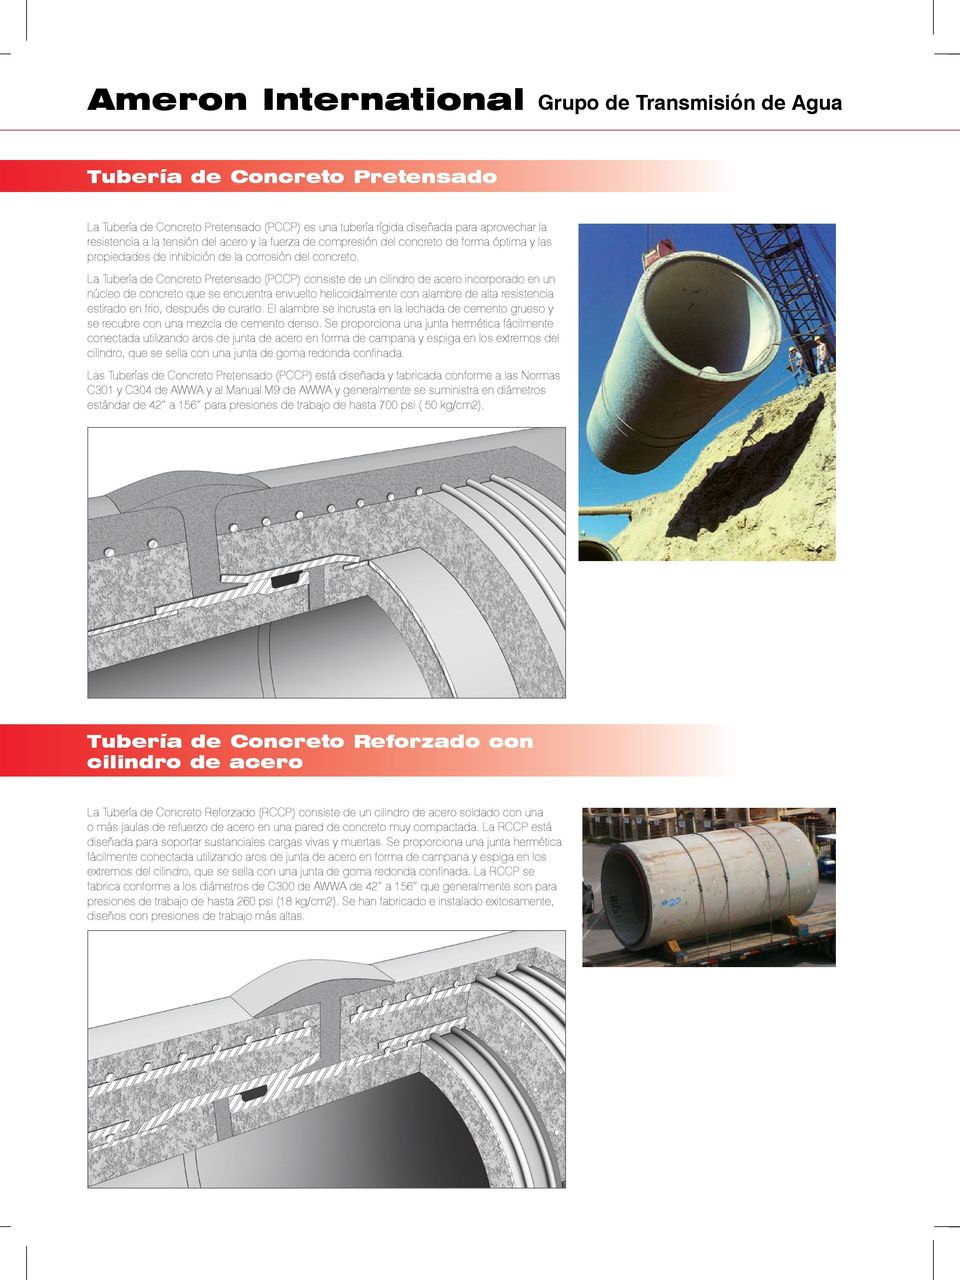 La Tubería de Concreto Pretensado (PCCP) consiste de un cilindro de acero incorporado en un núcleo de concreto que se encuentra envuelto helicoidalmente con alambre de alta resistencia estirado en